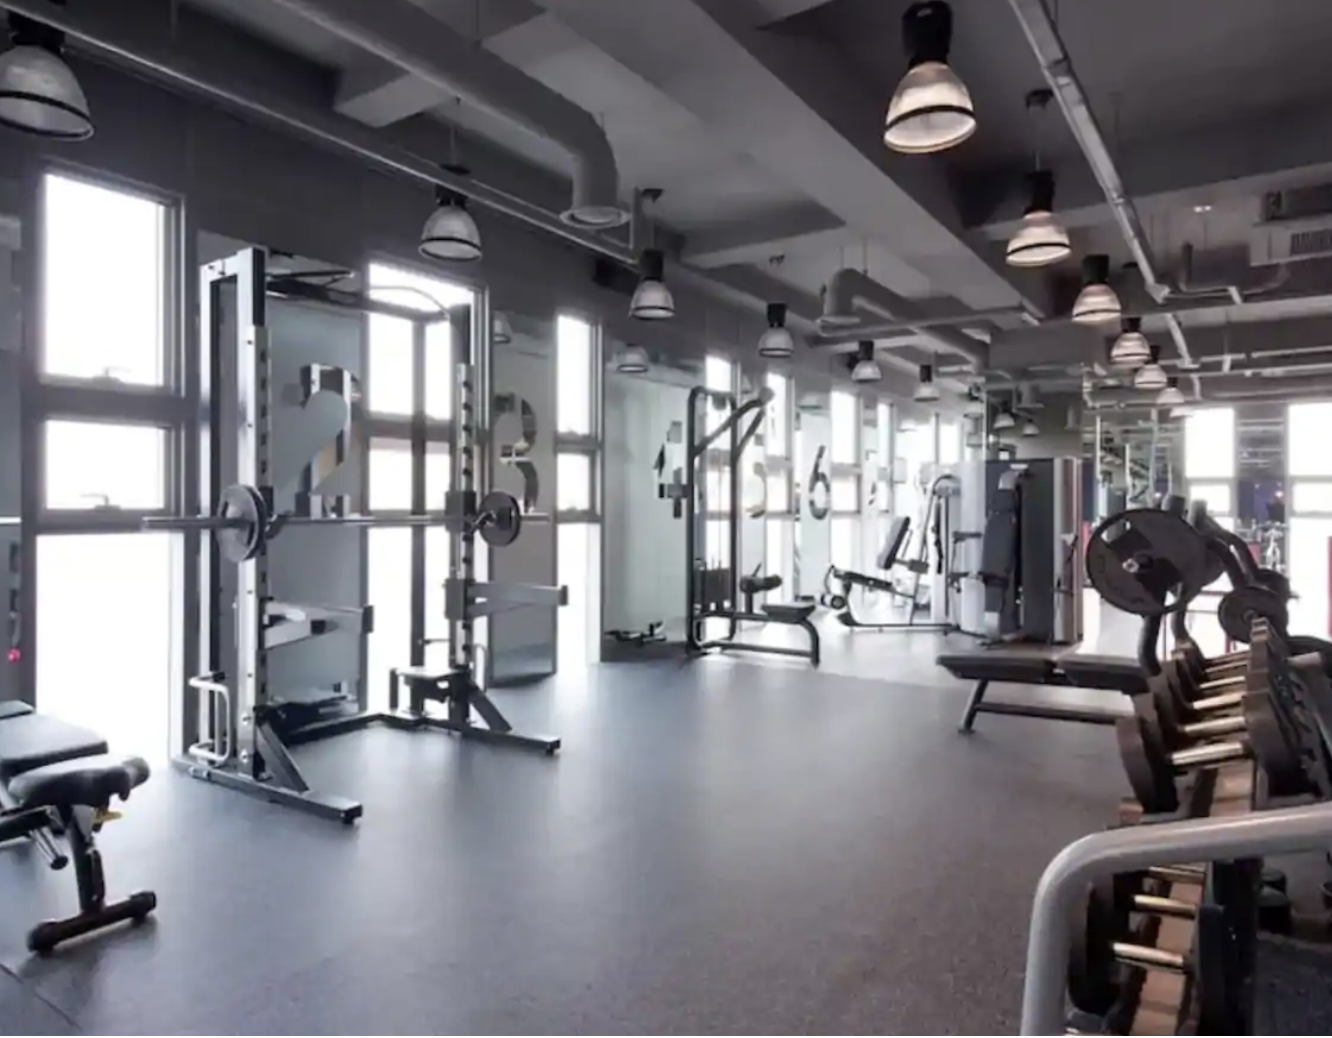 Facilities: Gym (Copy)